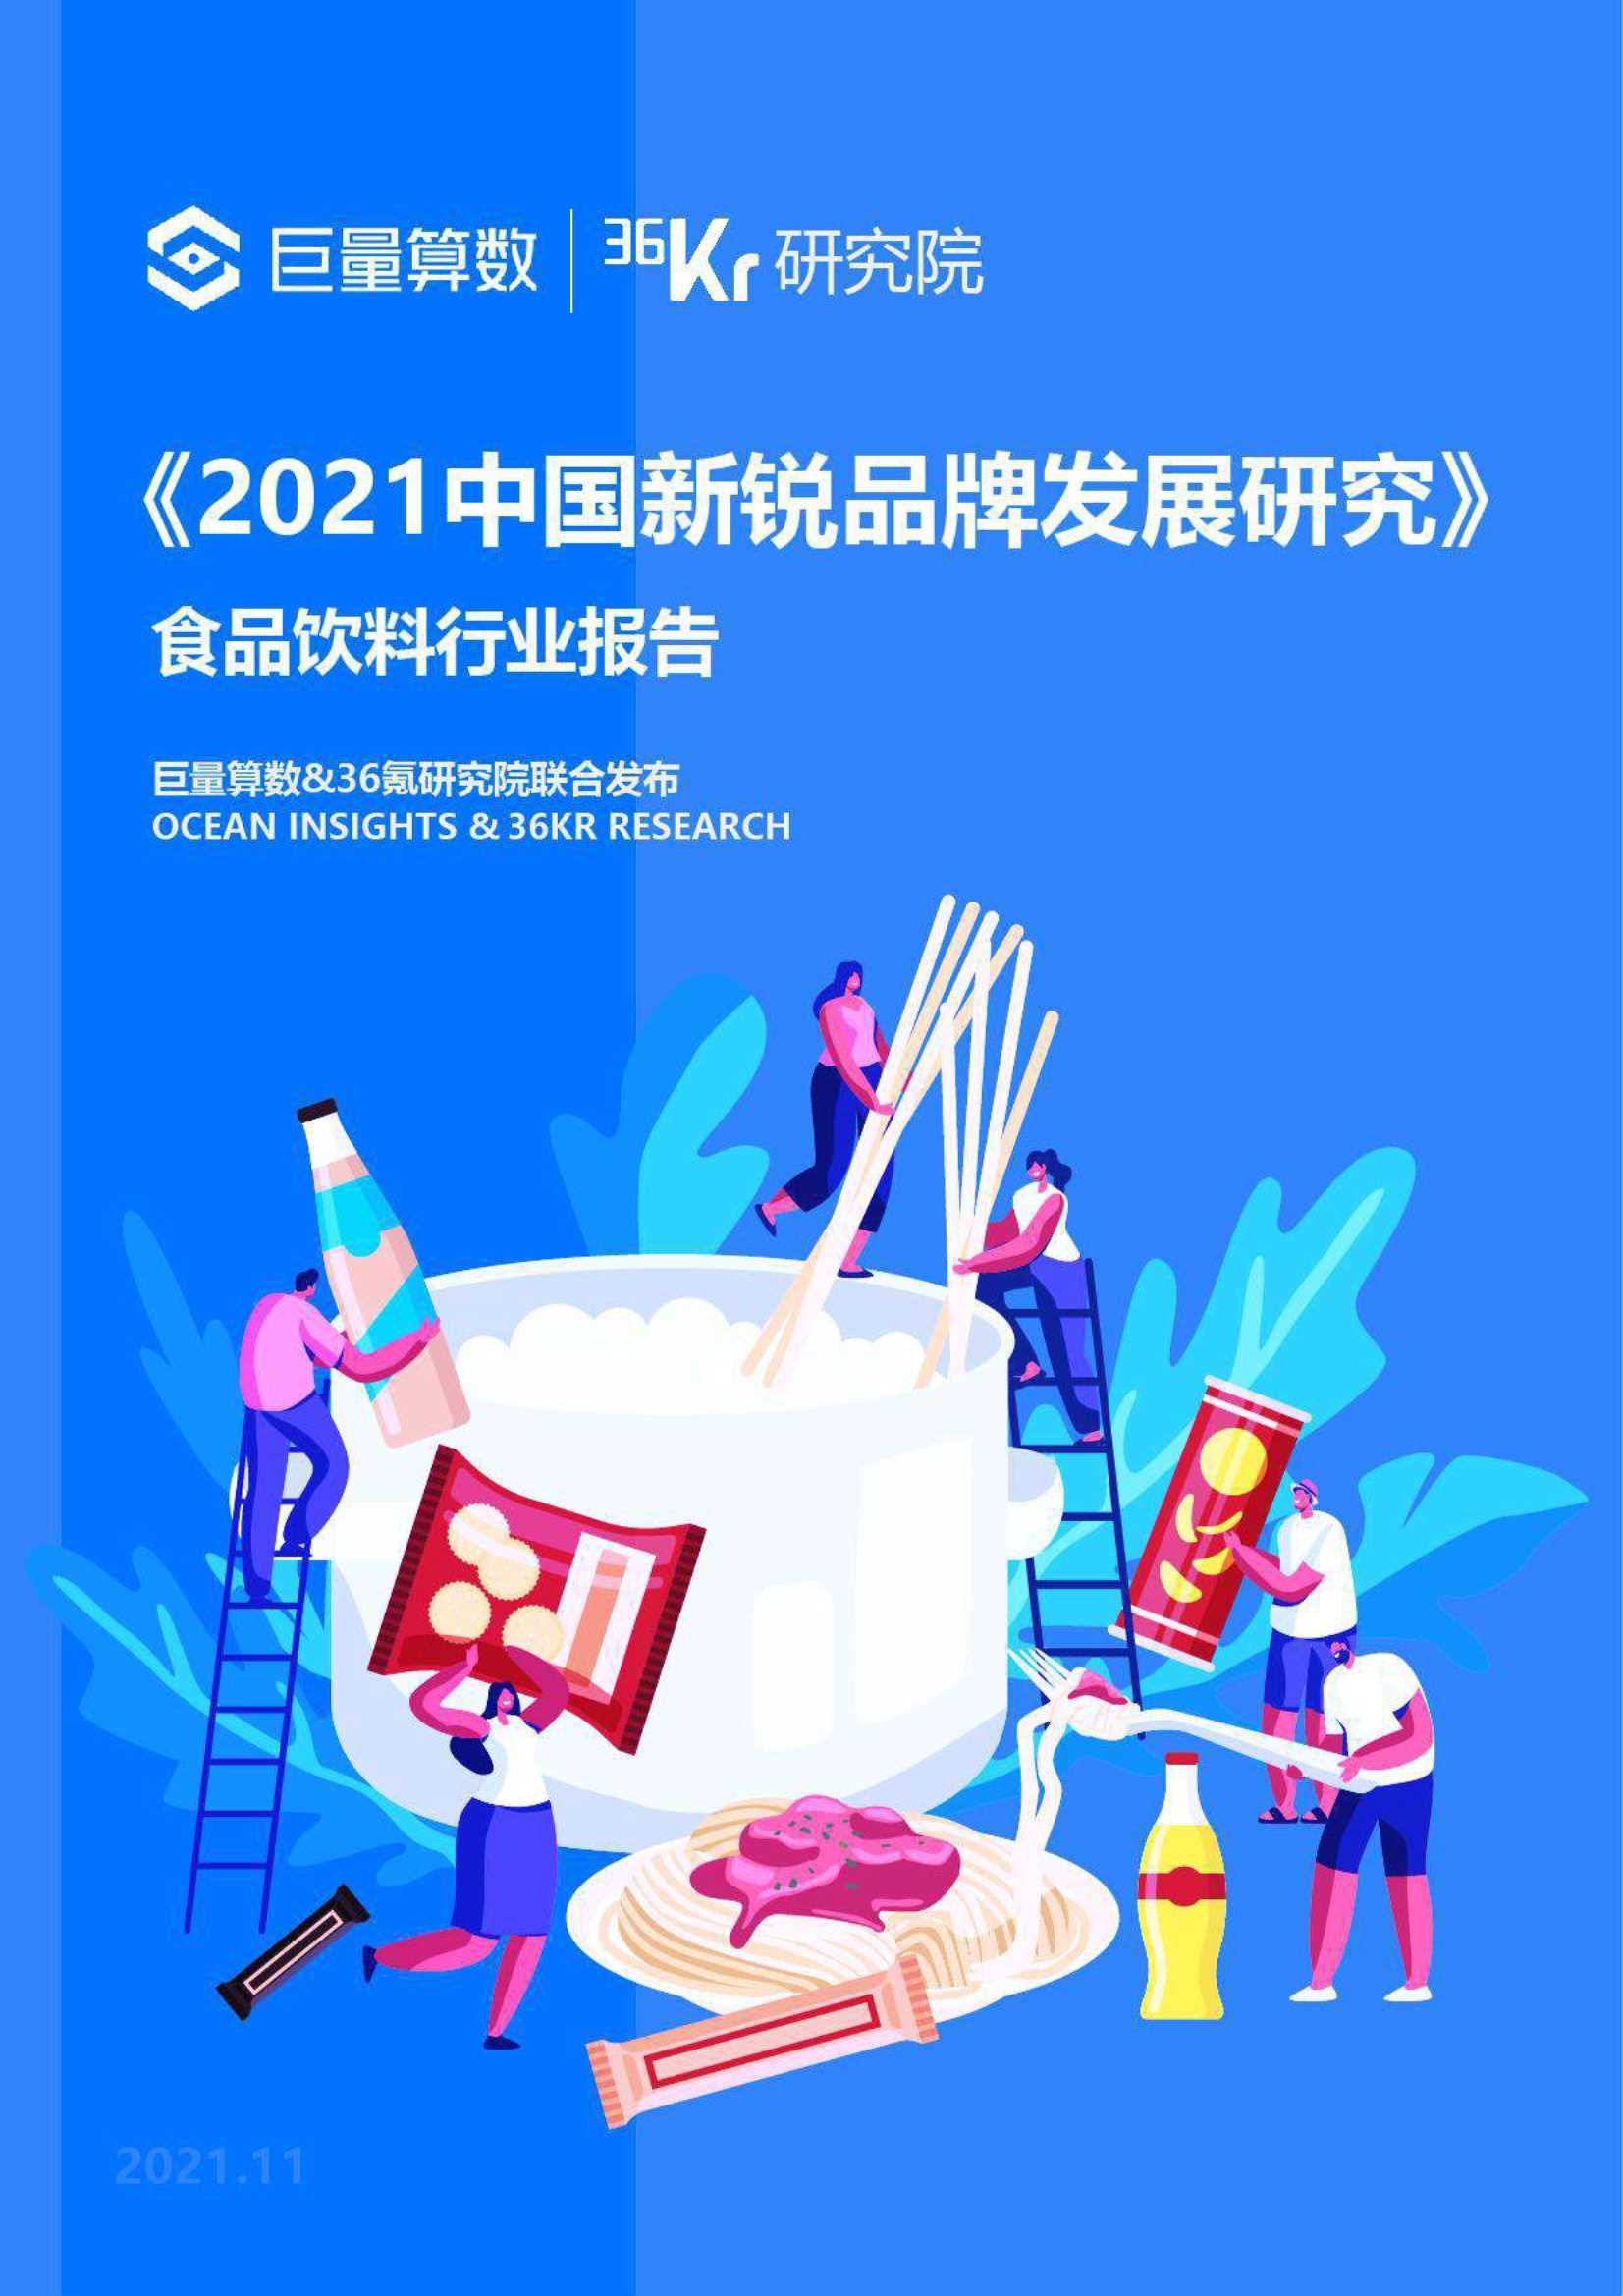 36Kr-2021中国新锐品牌发展研究 食品饮料报告-2021.11-39页